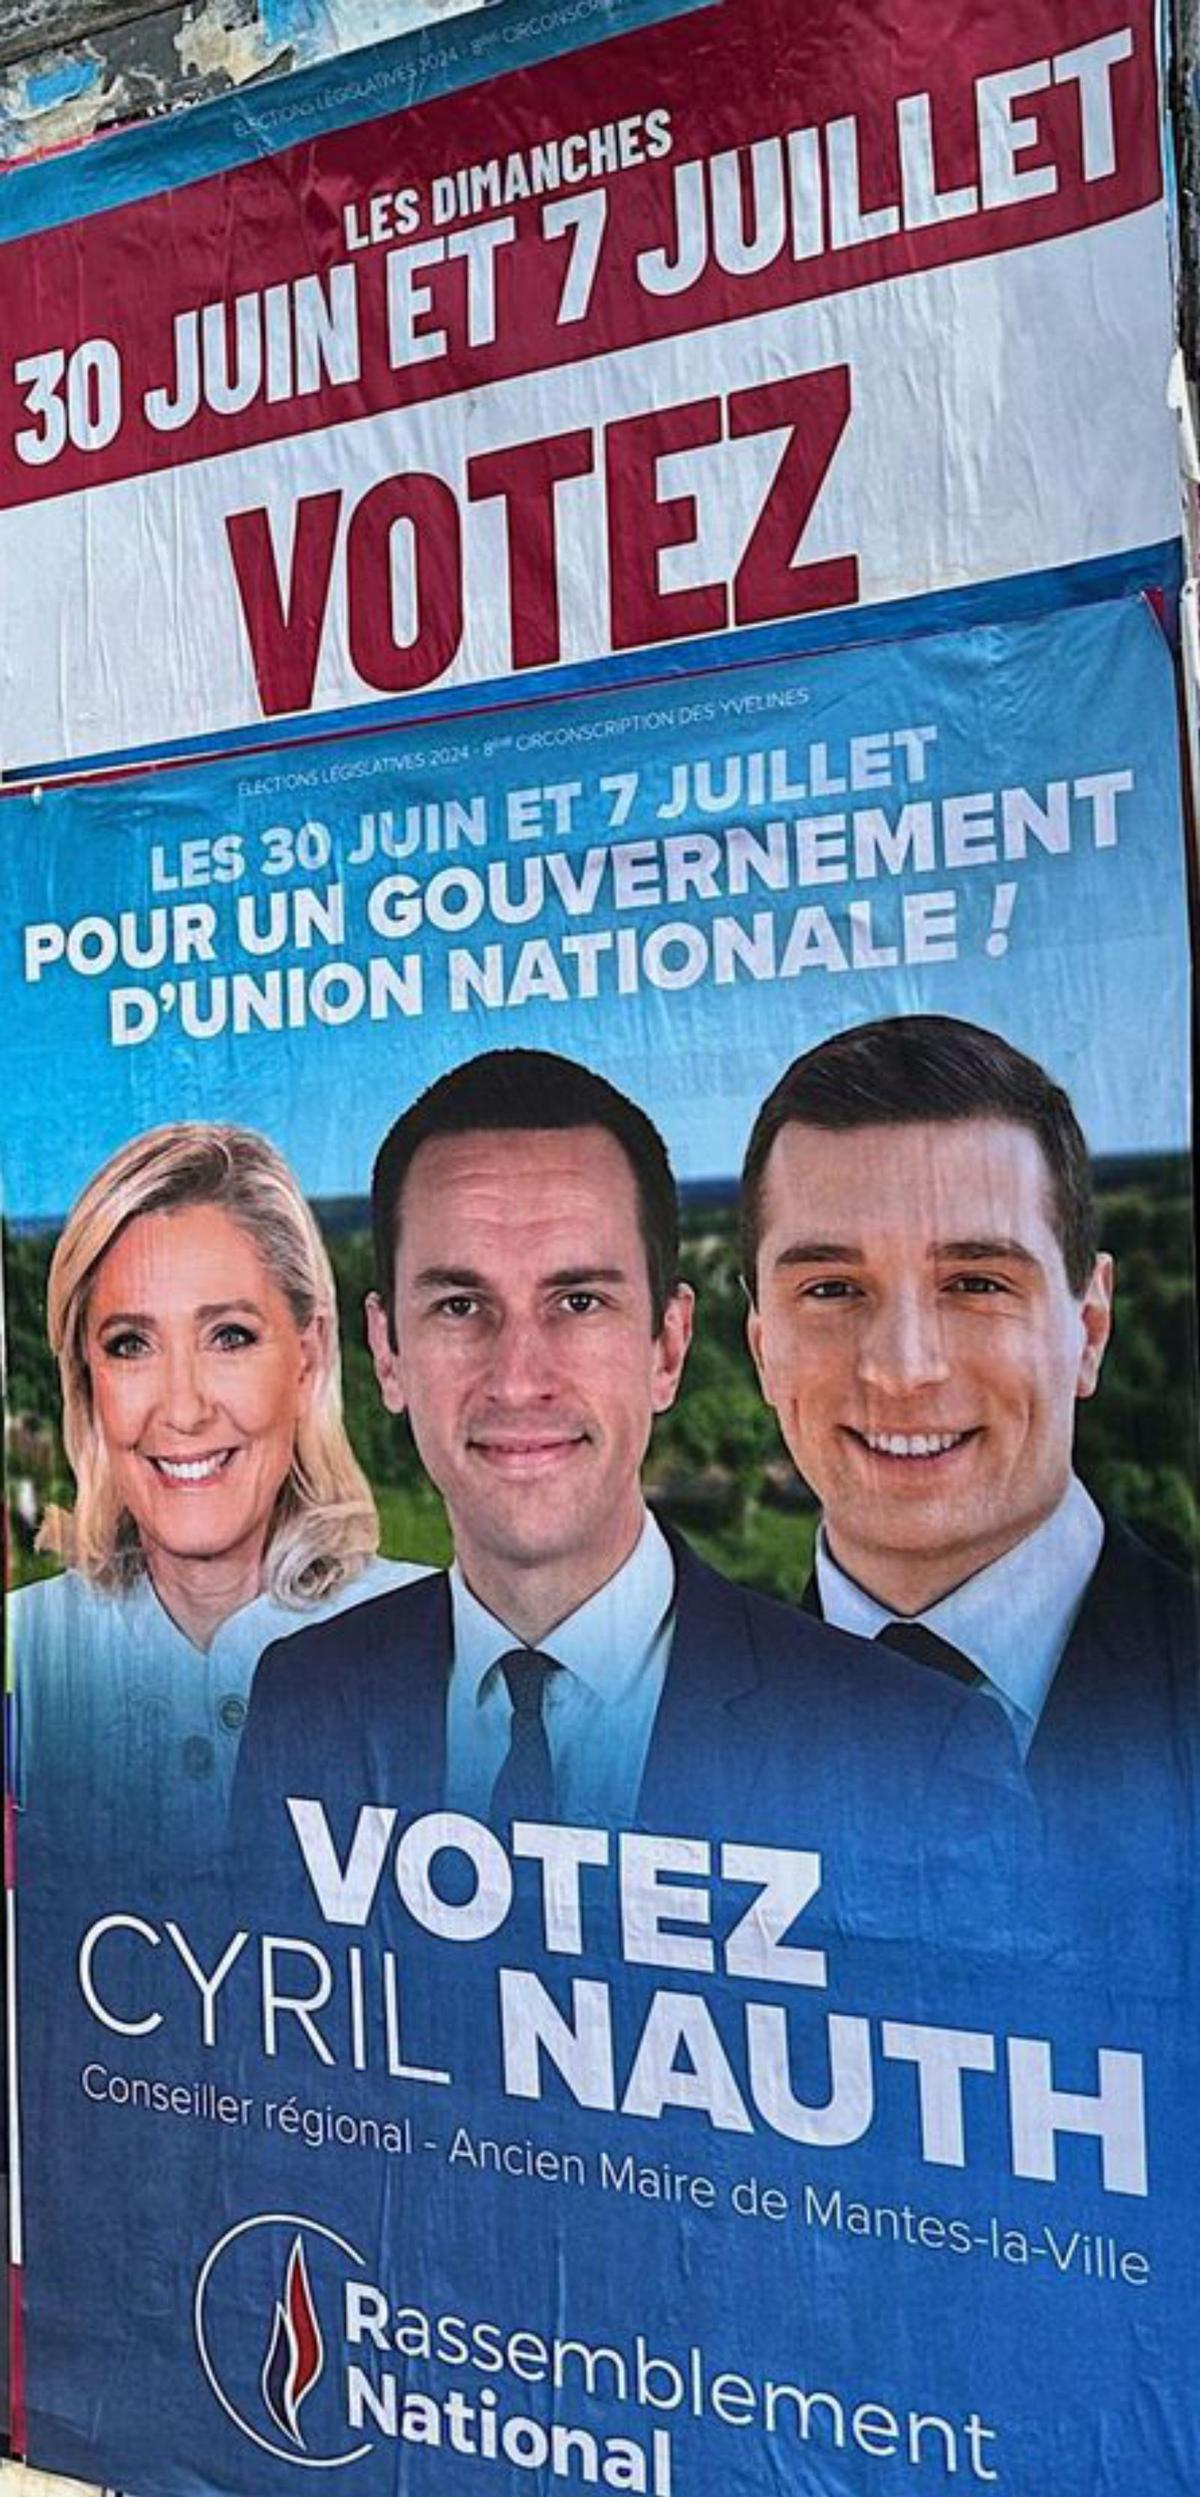 El món rural s’inclina per Le Pen